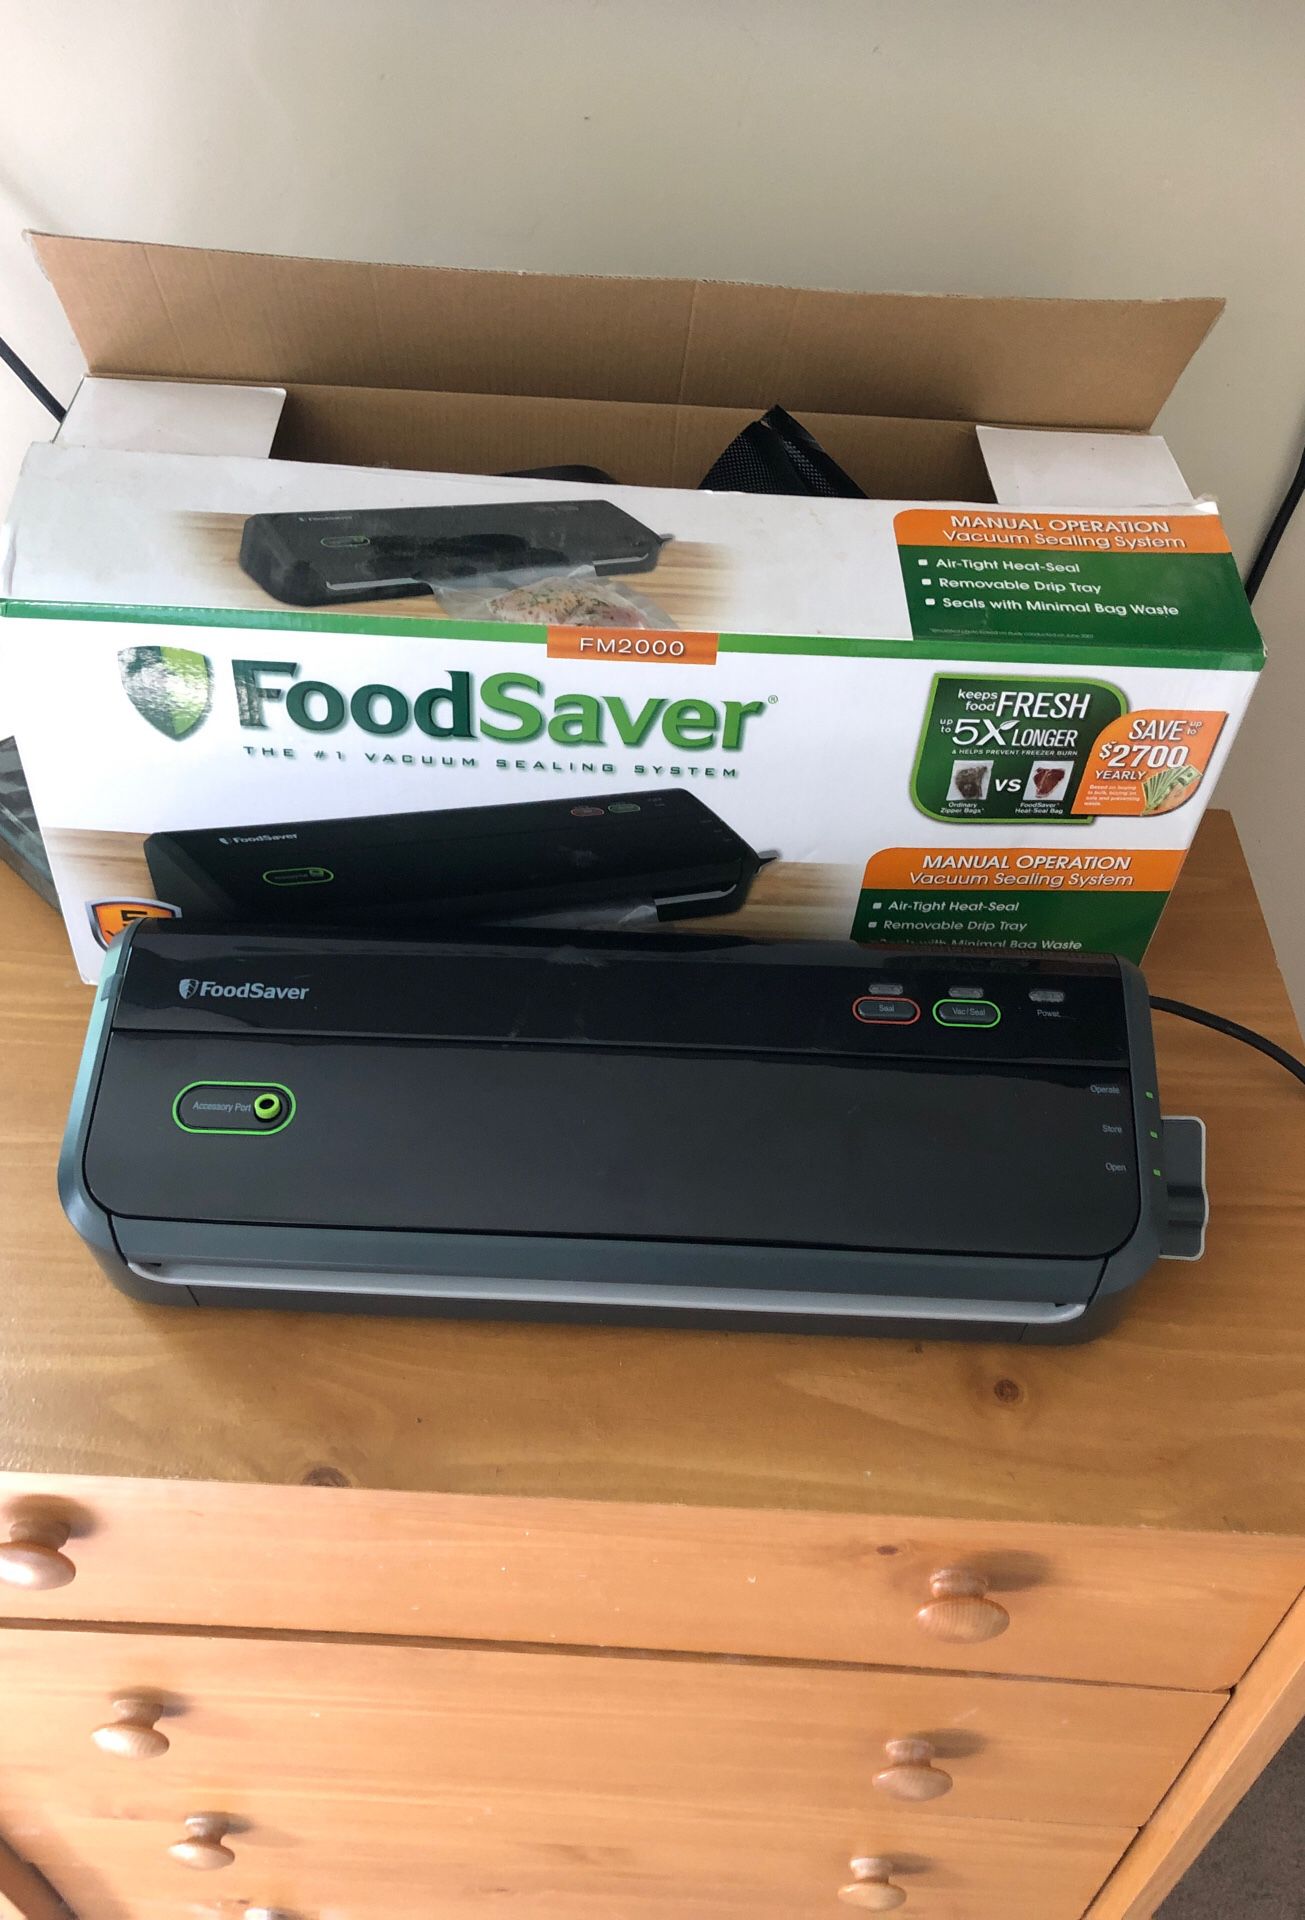 Food saver vacuum sealer